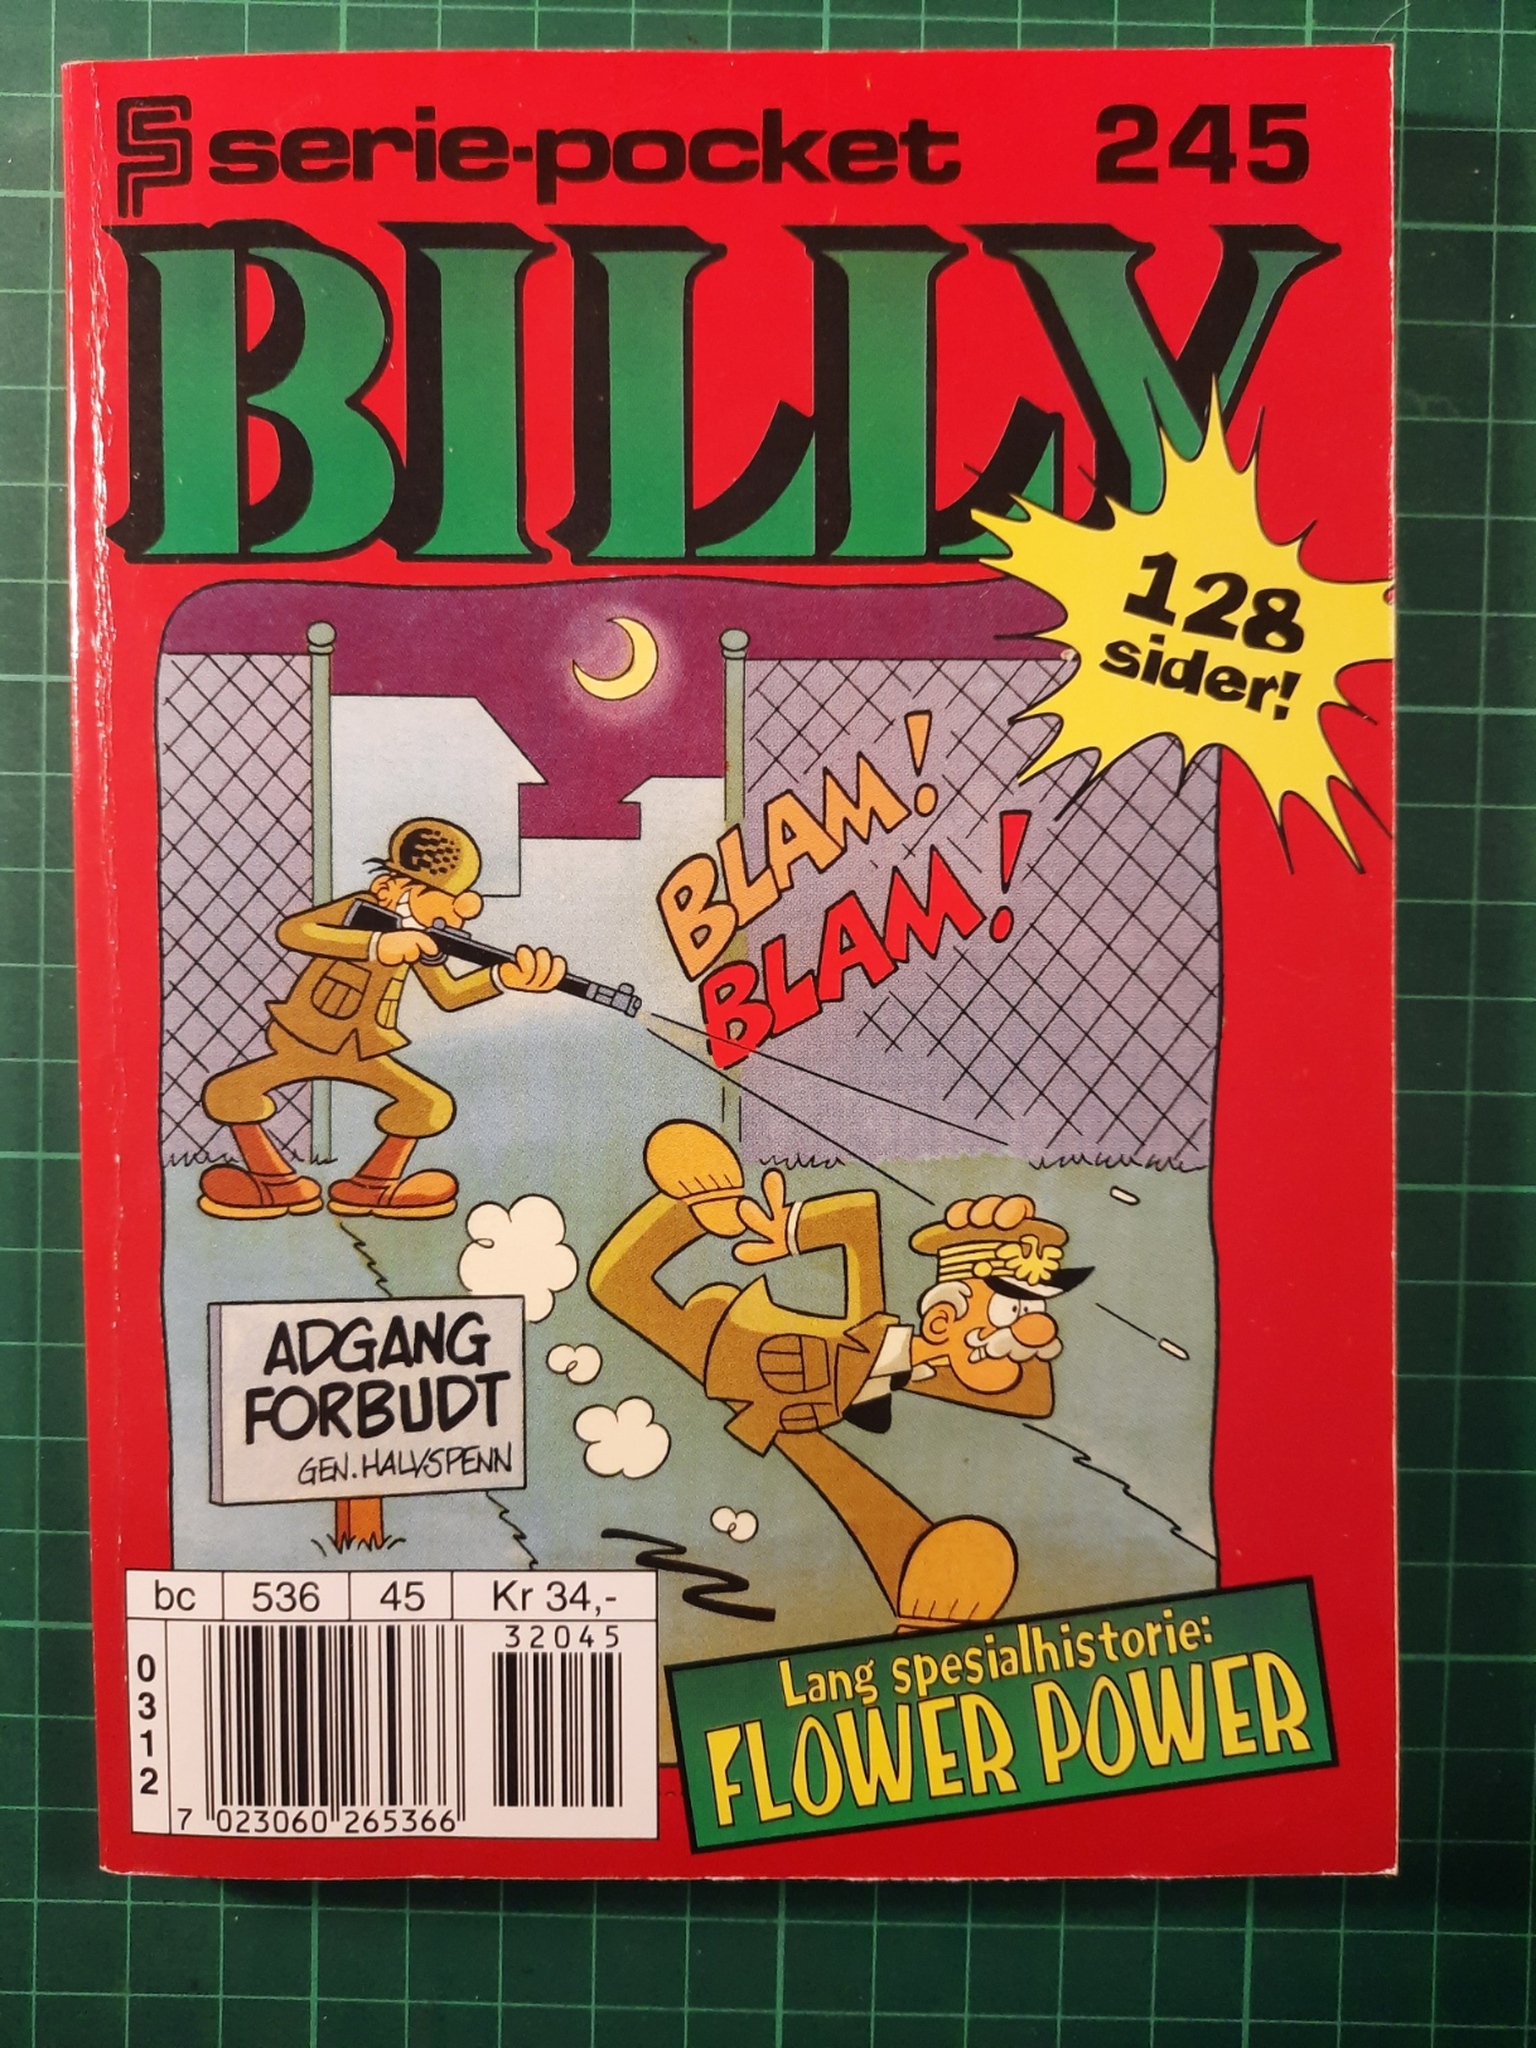 Serie-pocket 245 : Billy